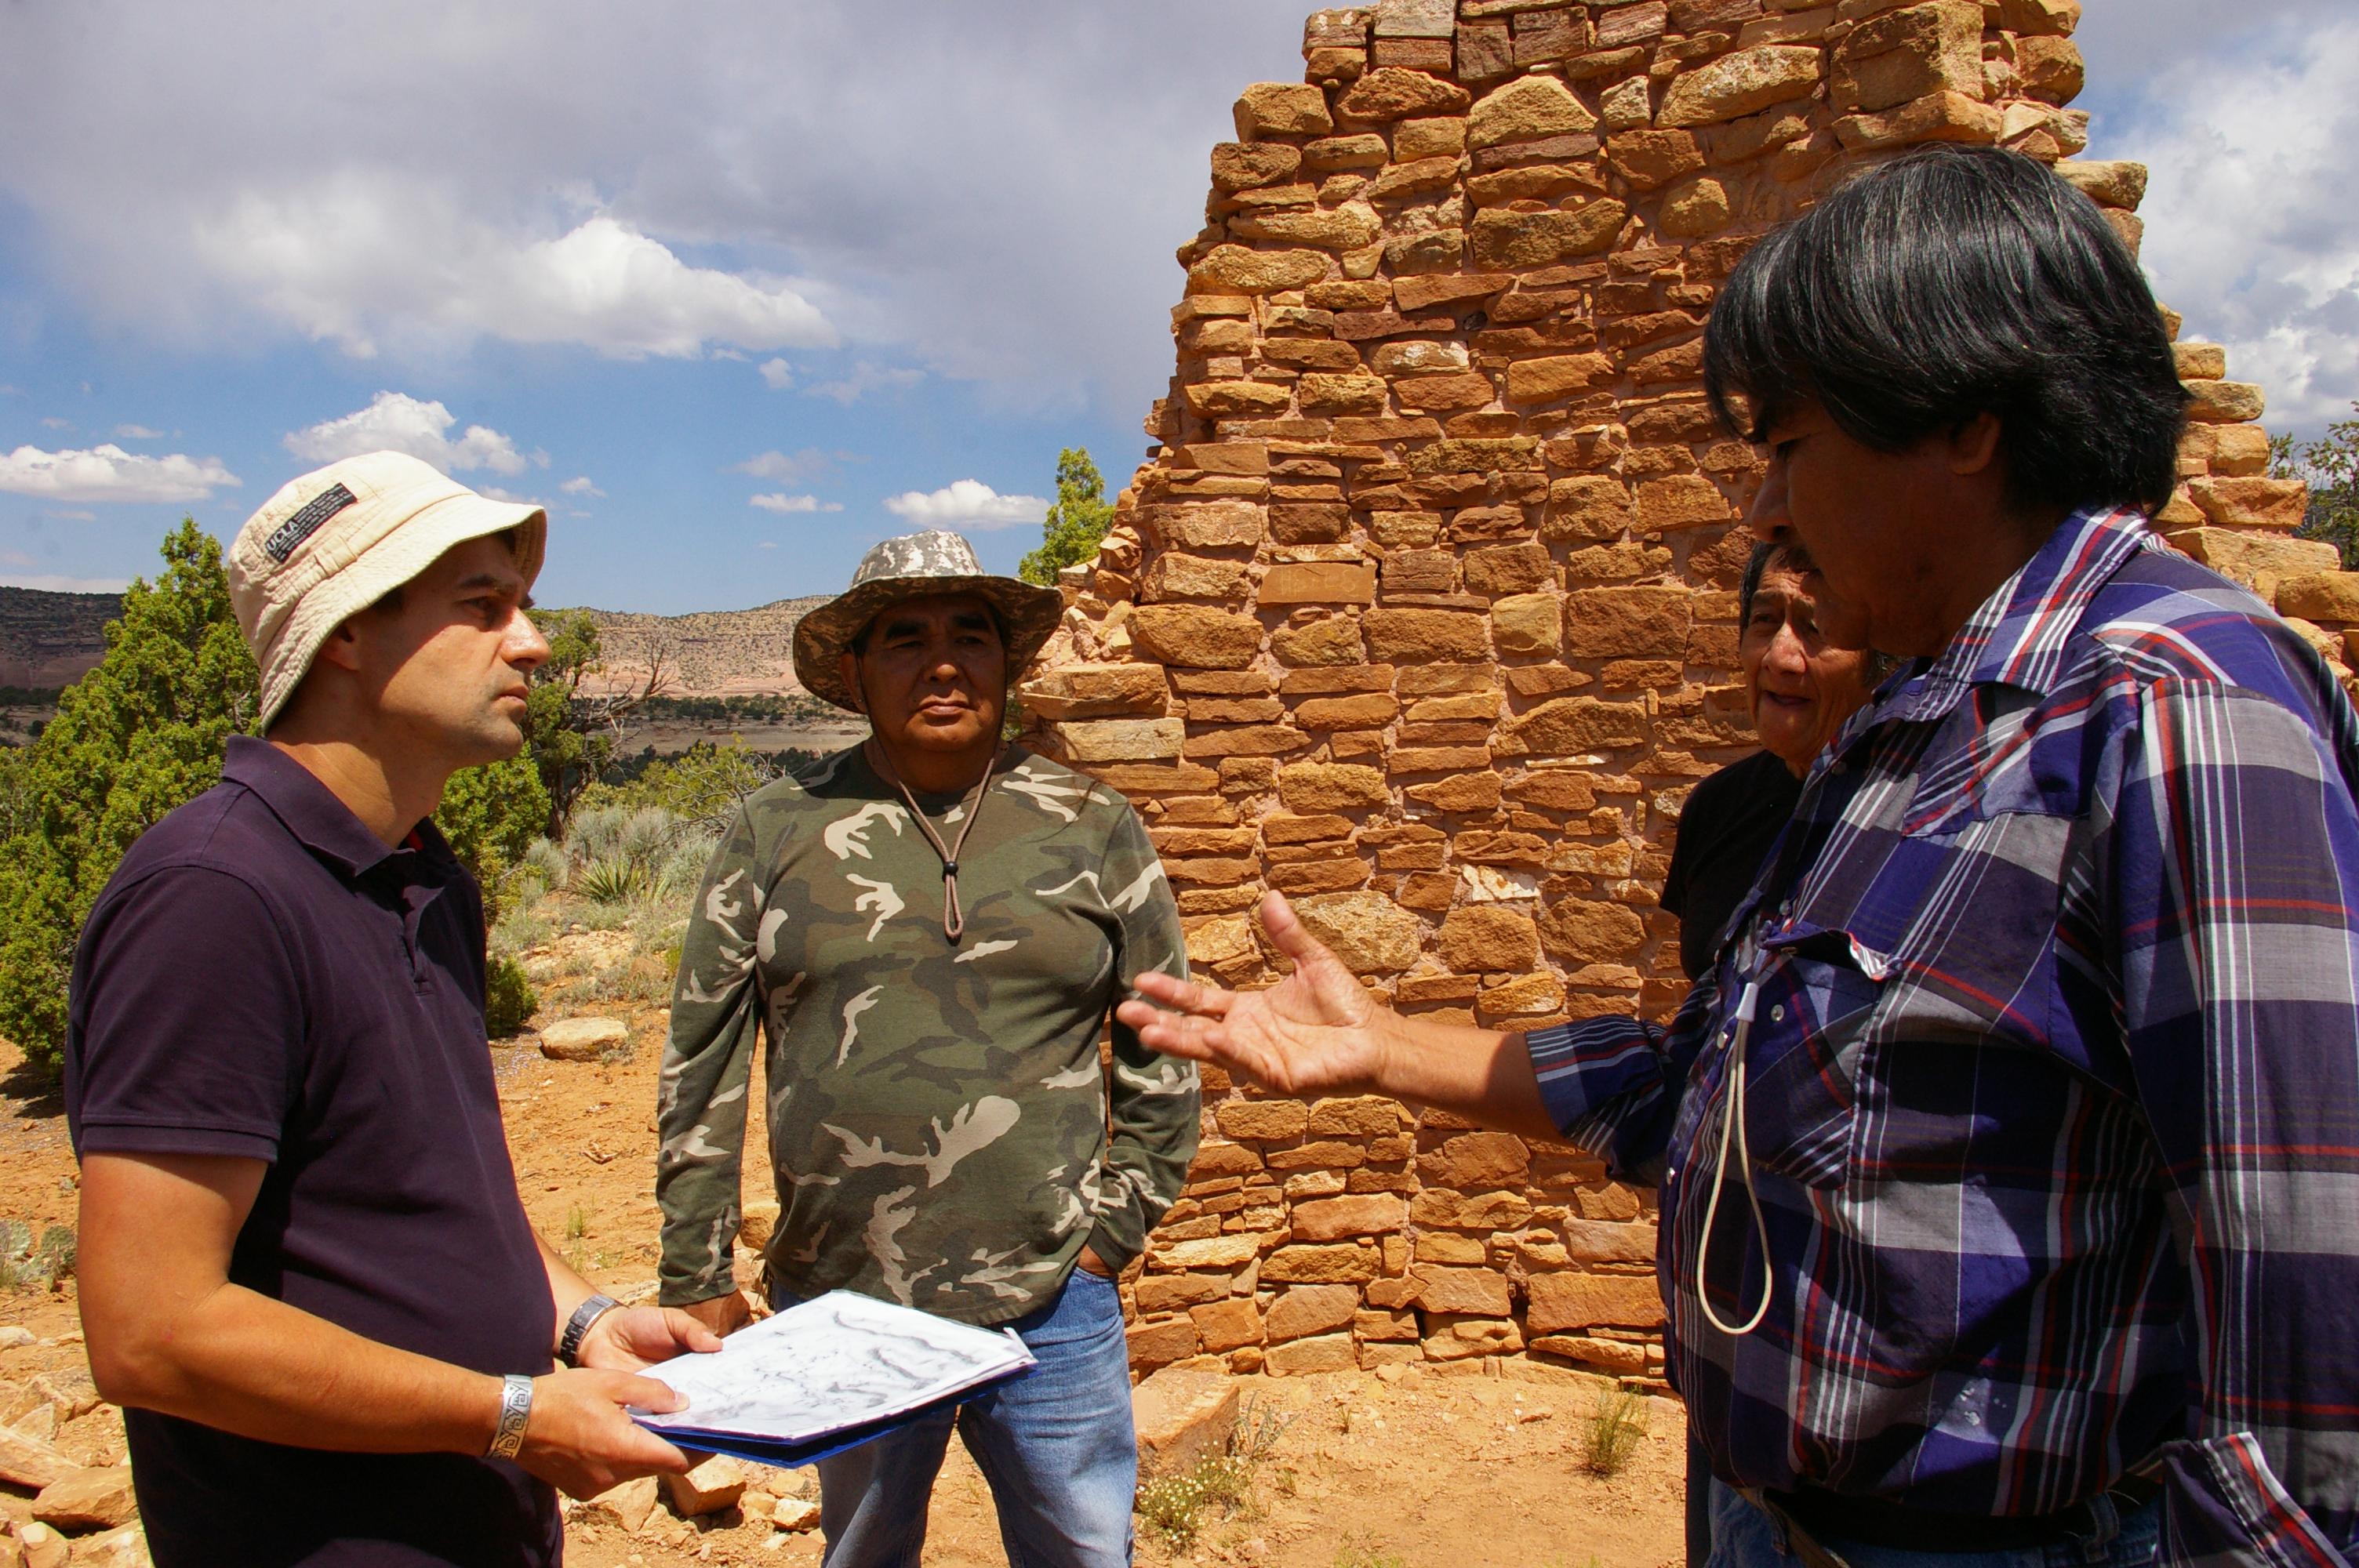 Konsultacje terenowe obejmują także konsultacje i wizyty współczesnych Indian Pueblo. Na zdjęciu Indianie Hopi z Arizony, z ośrodka zajmującego się podtrzymywaniem tradycji-Hopi Cultural Preservation Office